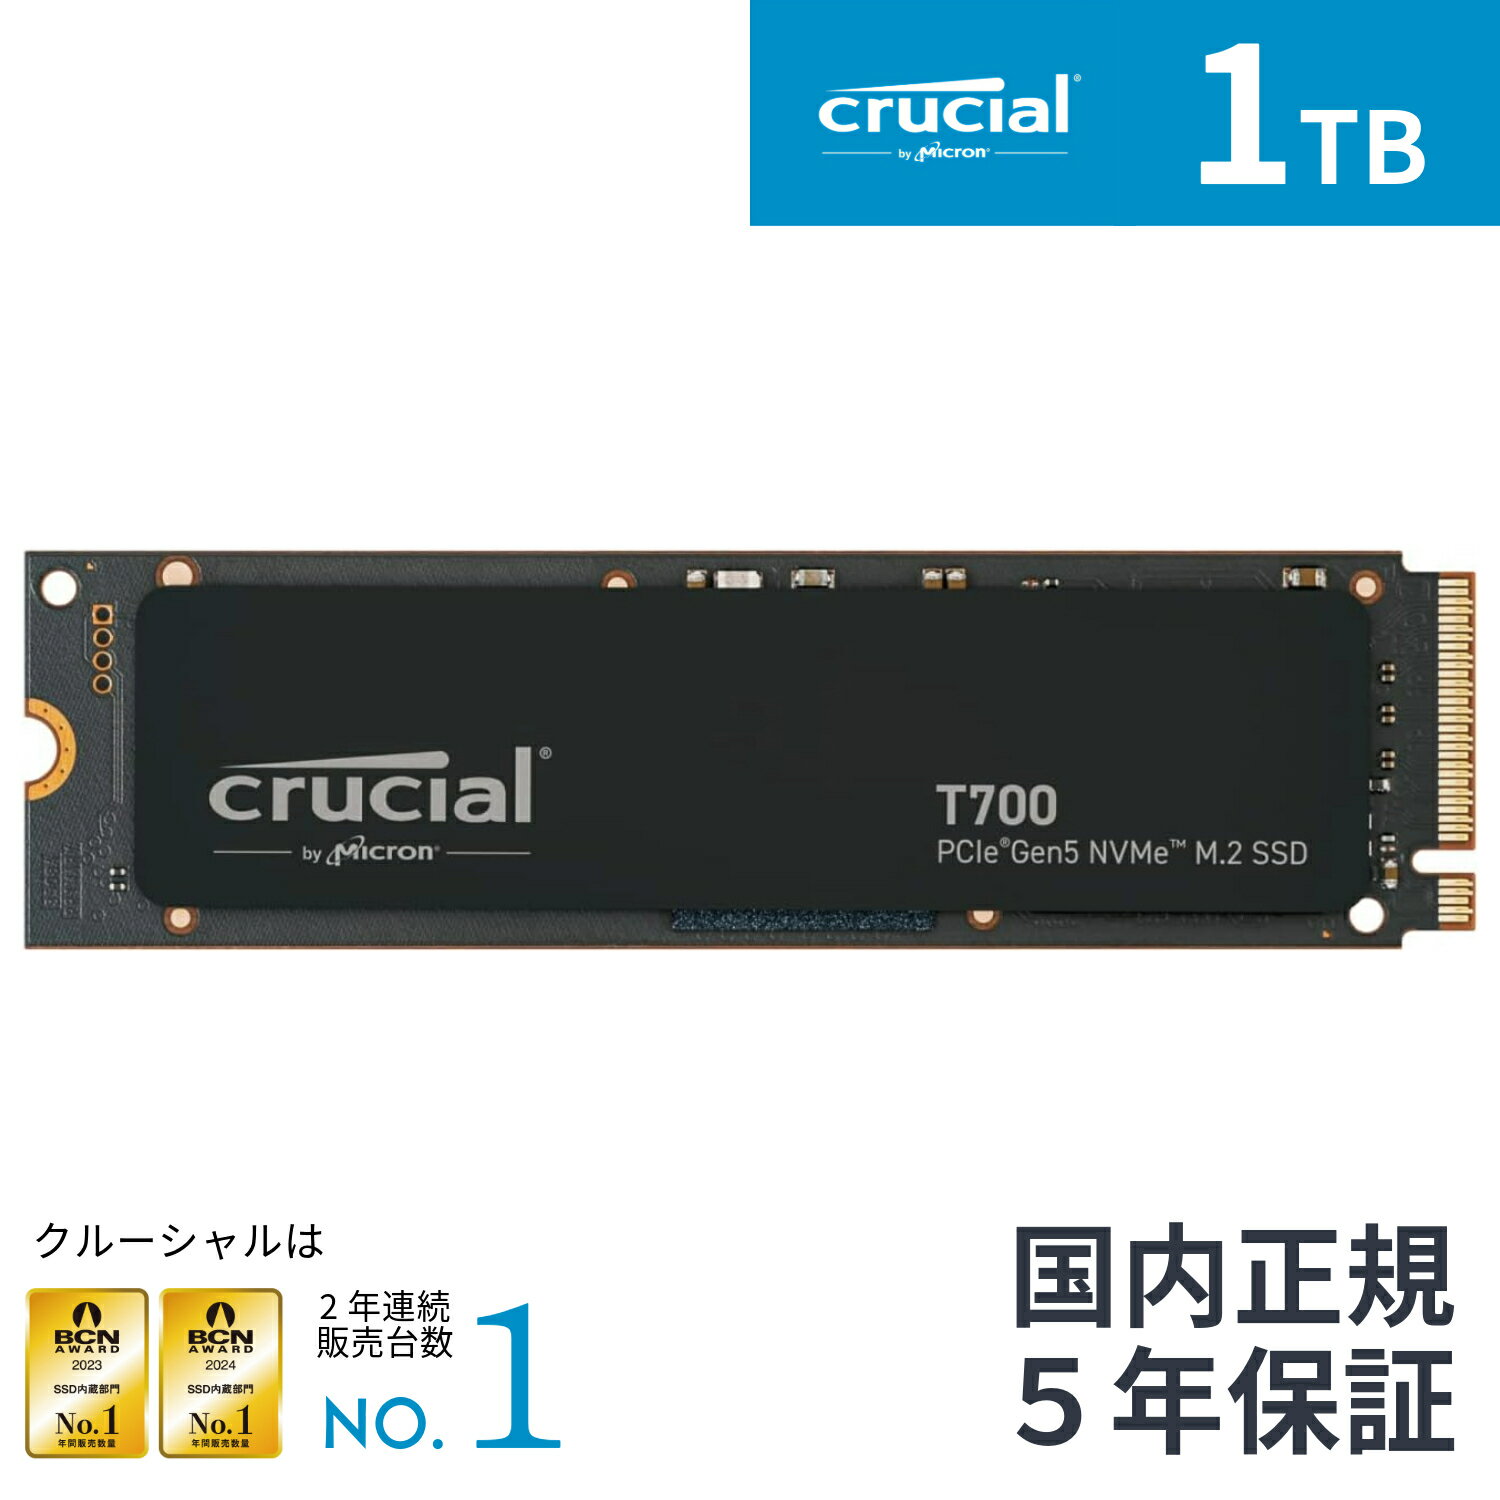 【国内正規流通品】Crucial クルーシャル T700 1TB 3D NAND NVMe PCIe5.0 M.2 SSD ヒートシンク無しモデル 最大12,400MB/秒 CT1000T700SSD3JP マイクロン Micron ゲーム ゲーミング 高速 増設 換装 高耐久 信頼性 内蔵ssd Gen5 DirectStorage